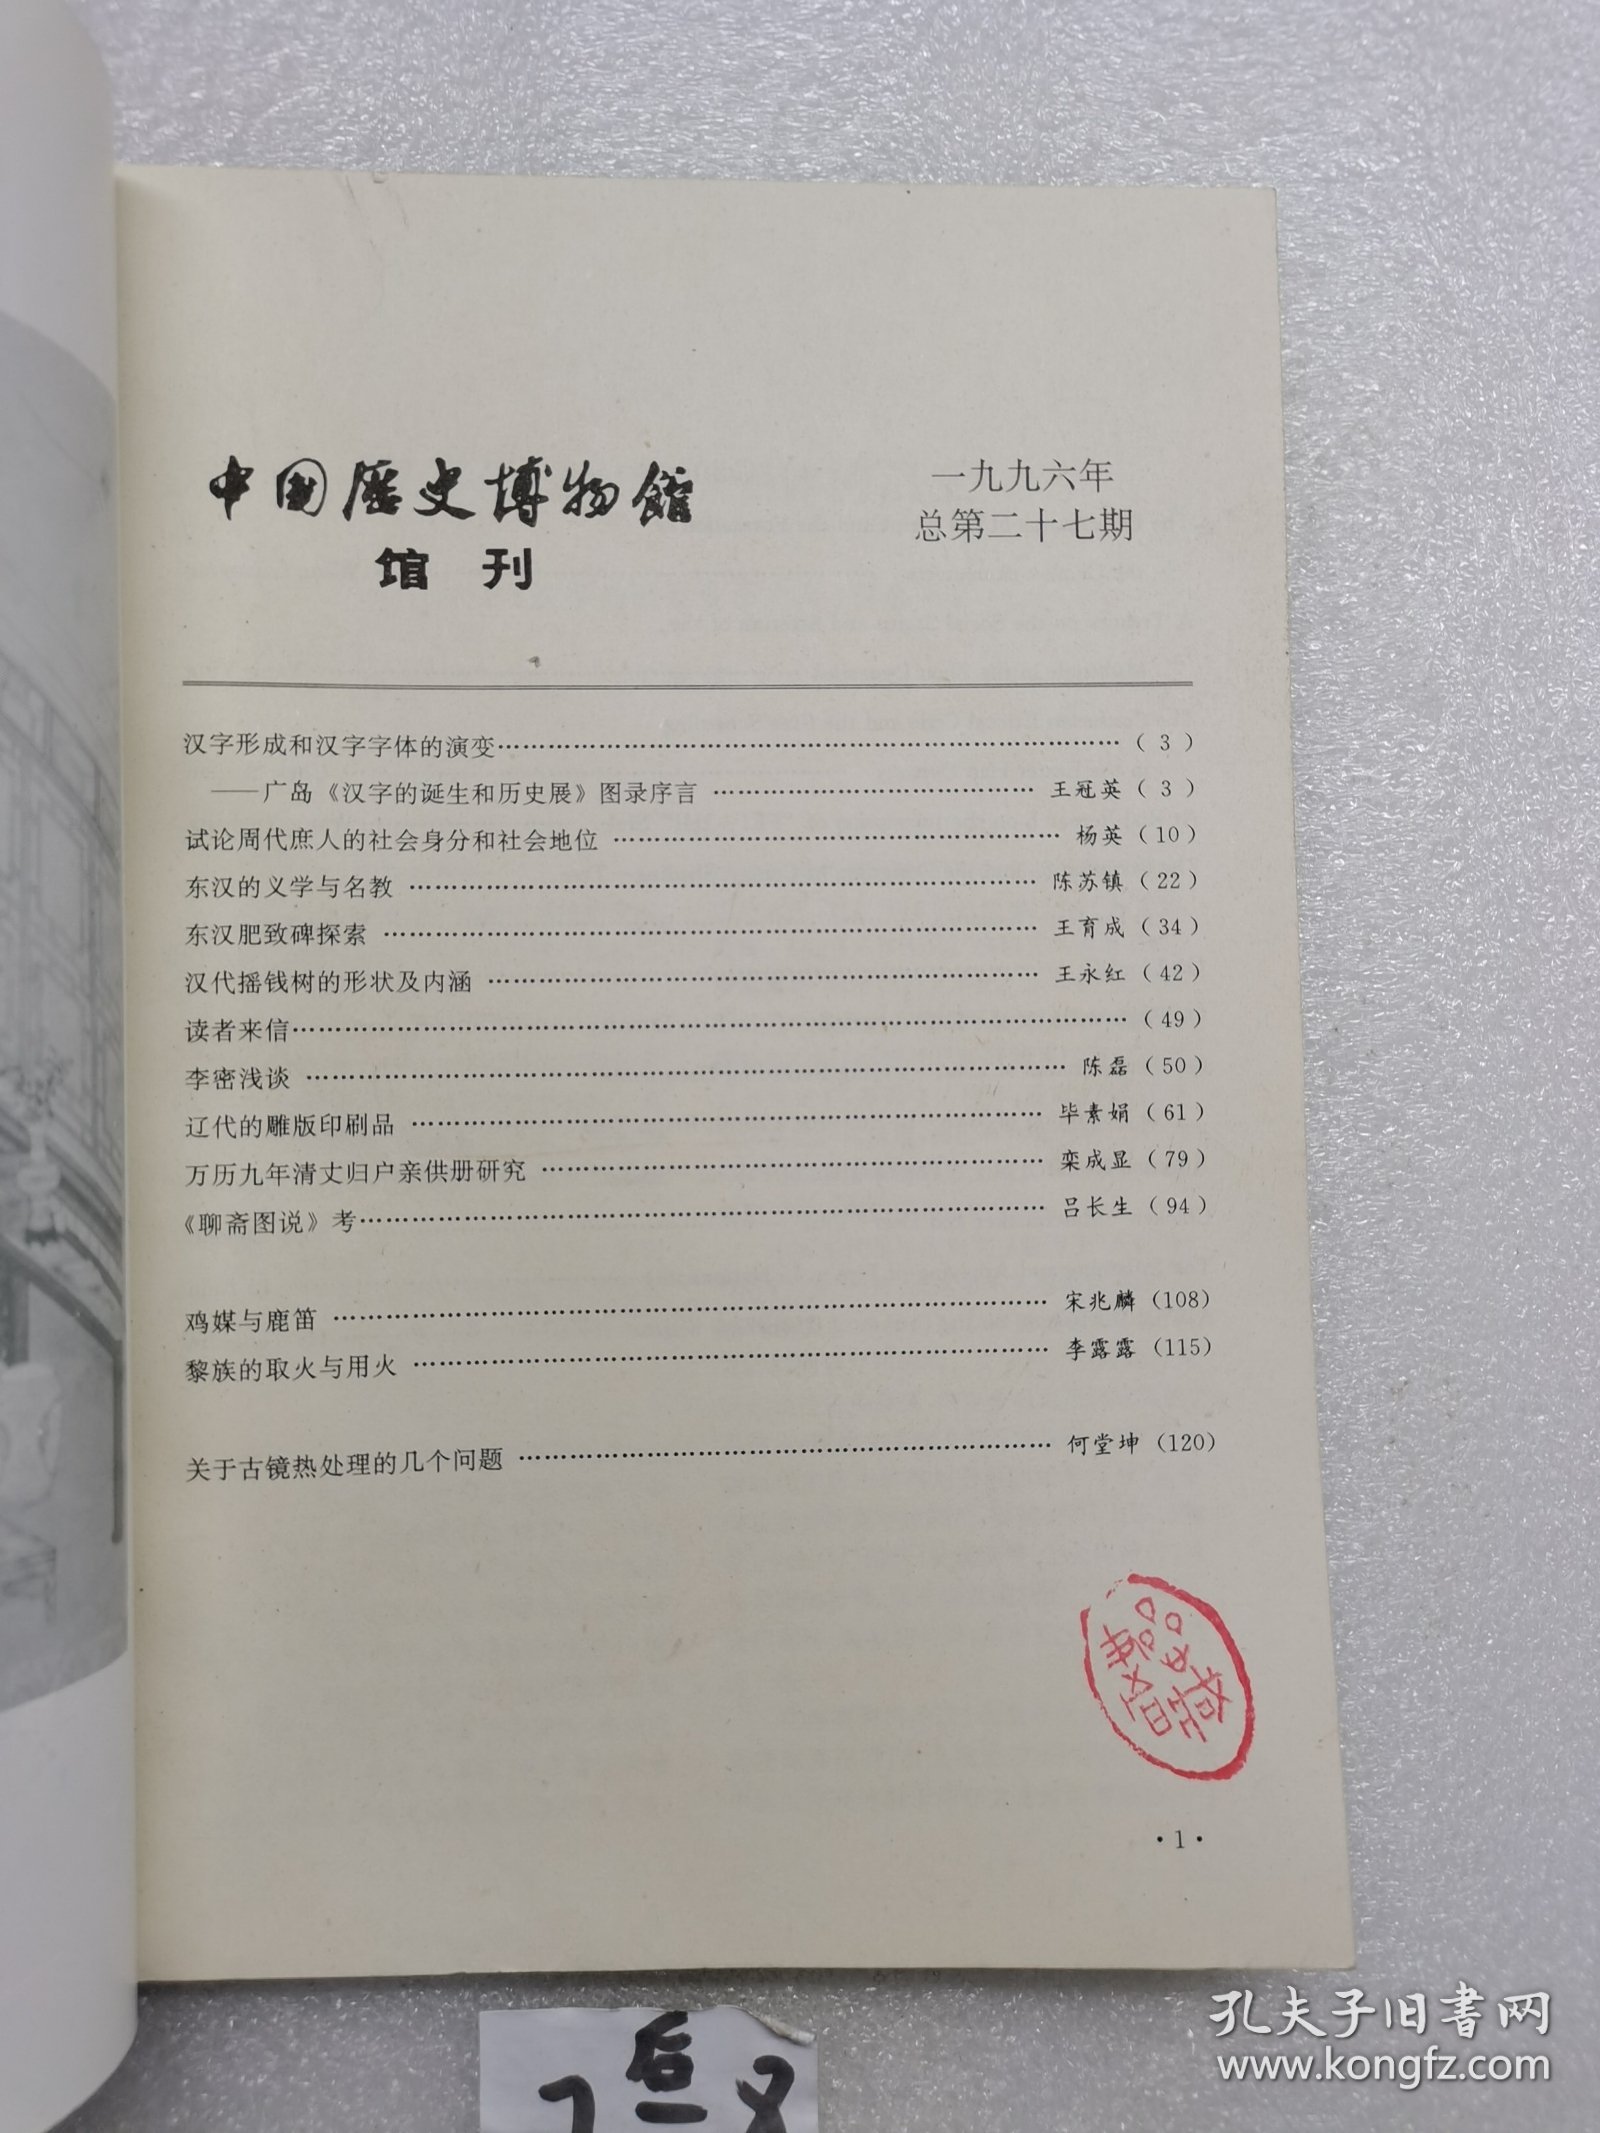 中国医史博物馆 管刊1996第2期。